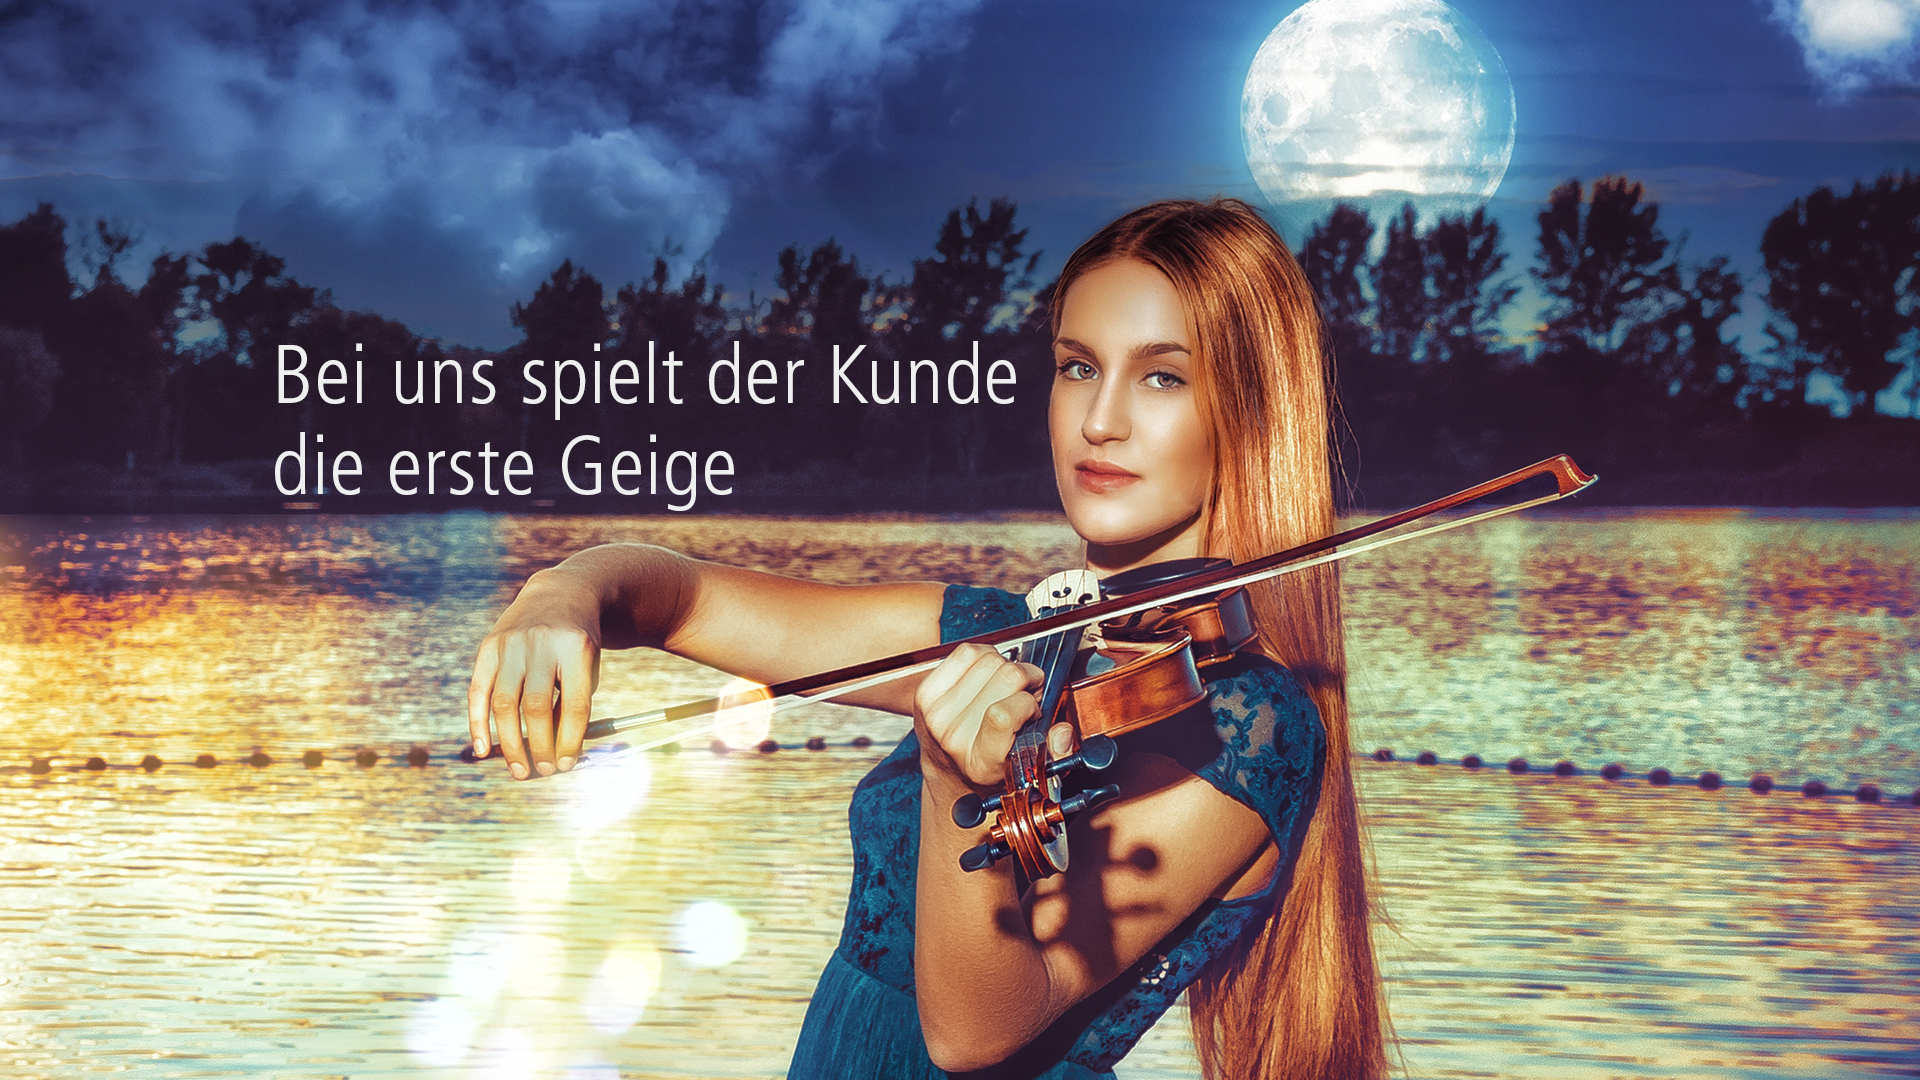 Kunde, erste Geige, Pixelpower, Fotostudio, Staßfurt, Hecklingen, Frau, Musik, Oeffnungszeiten